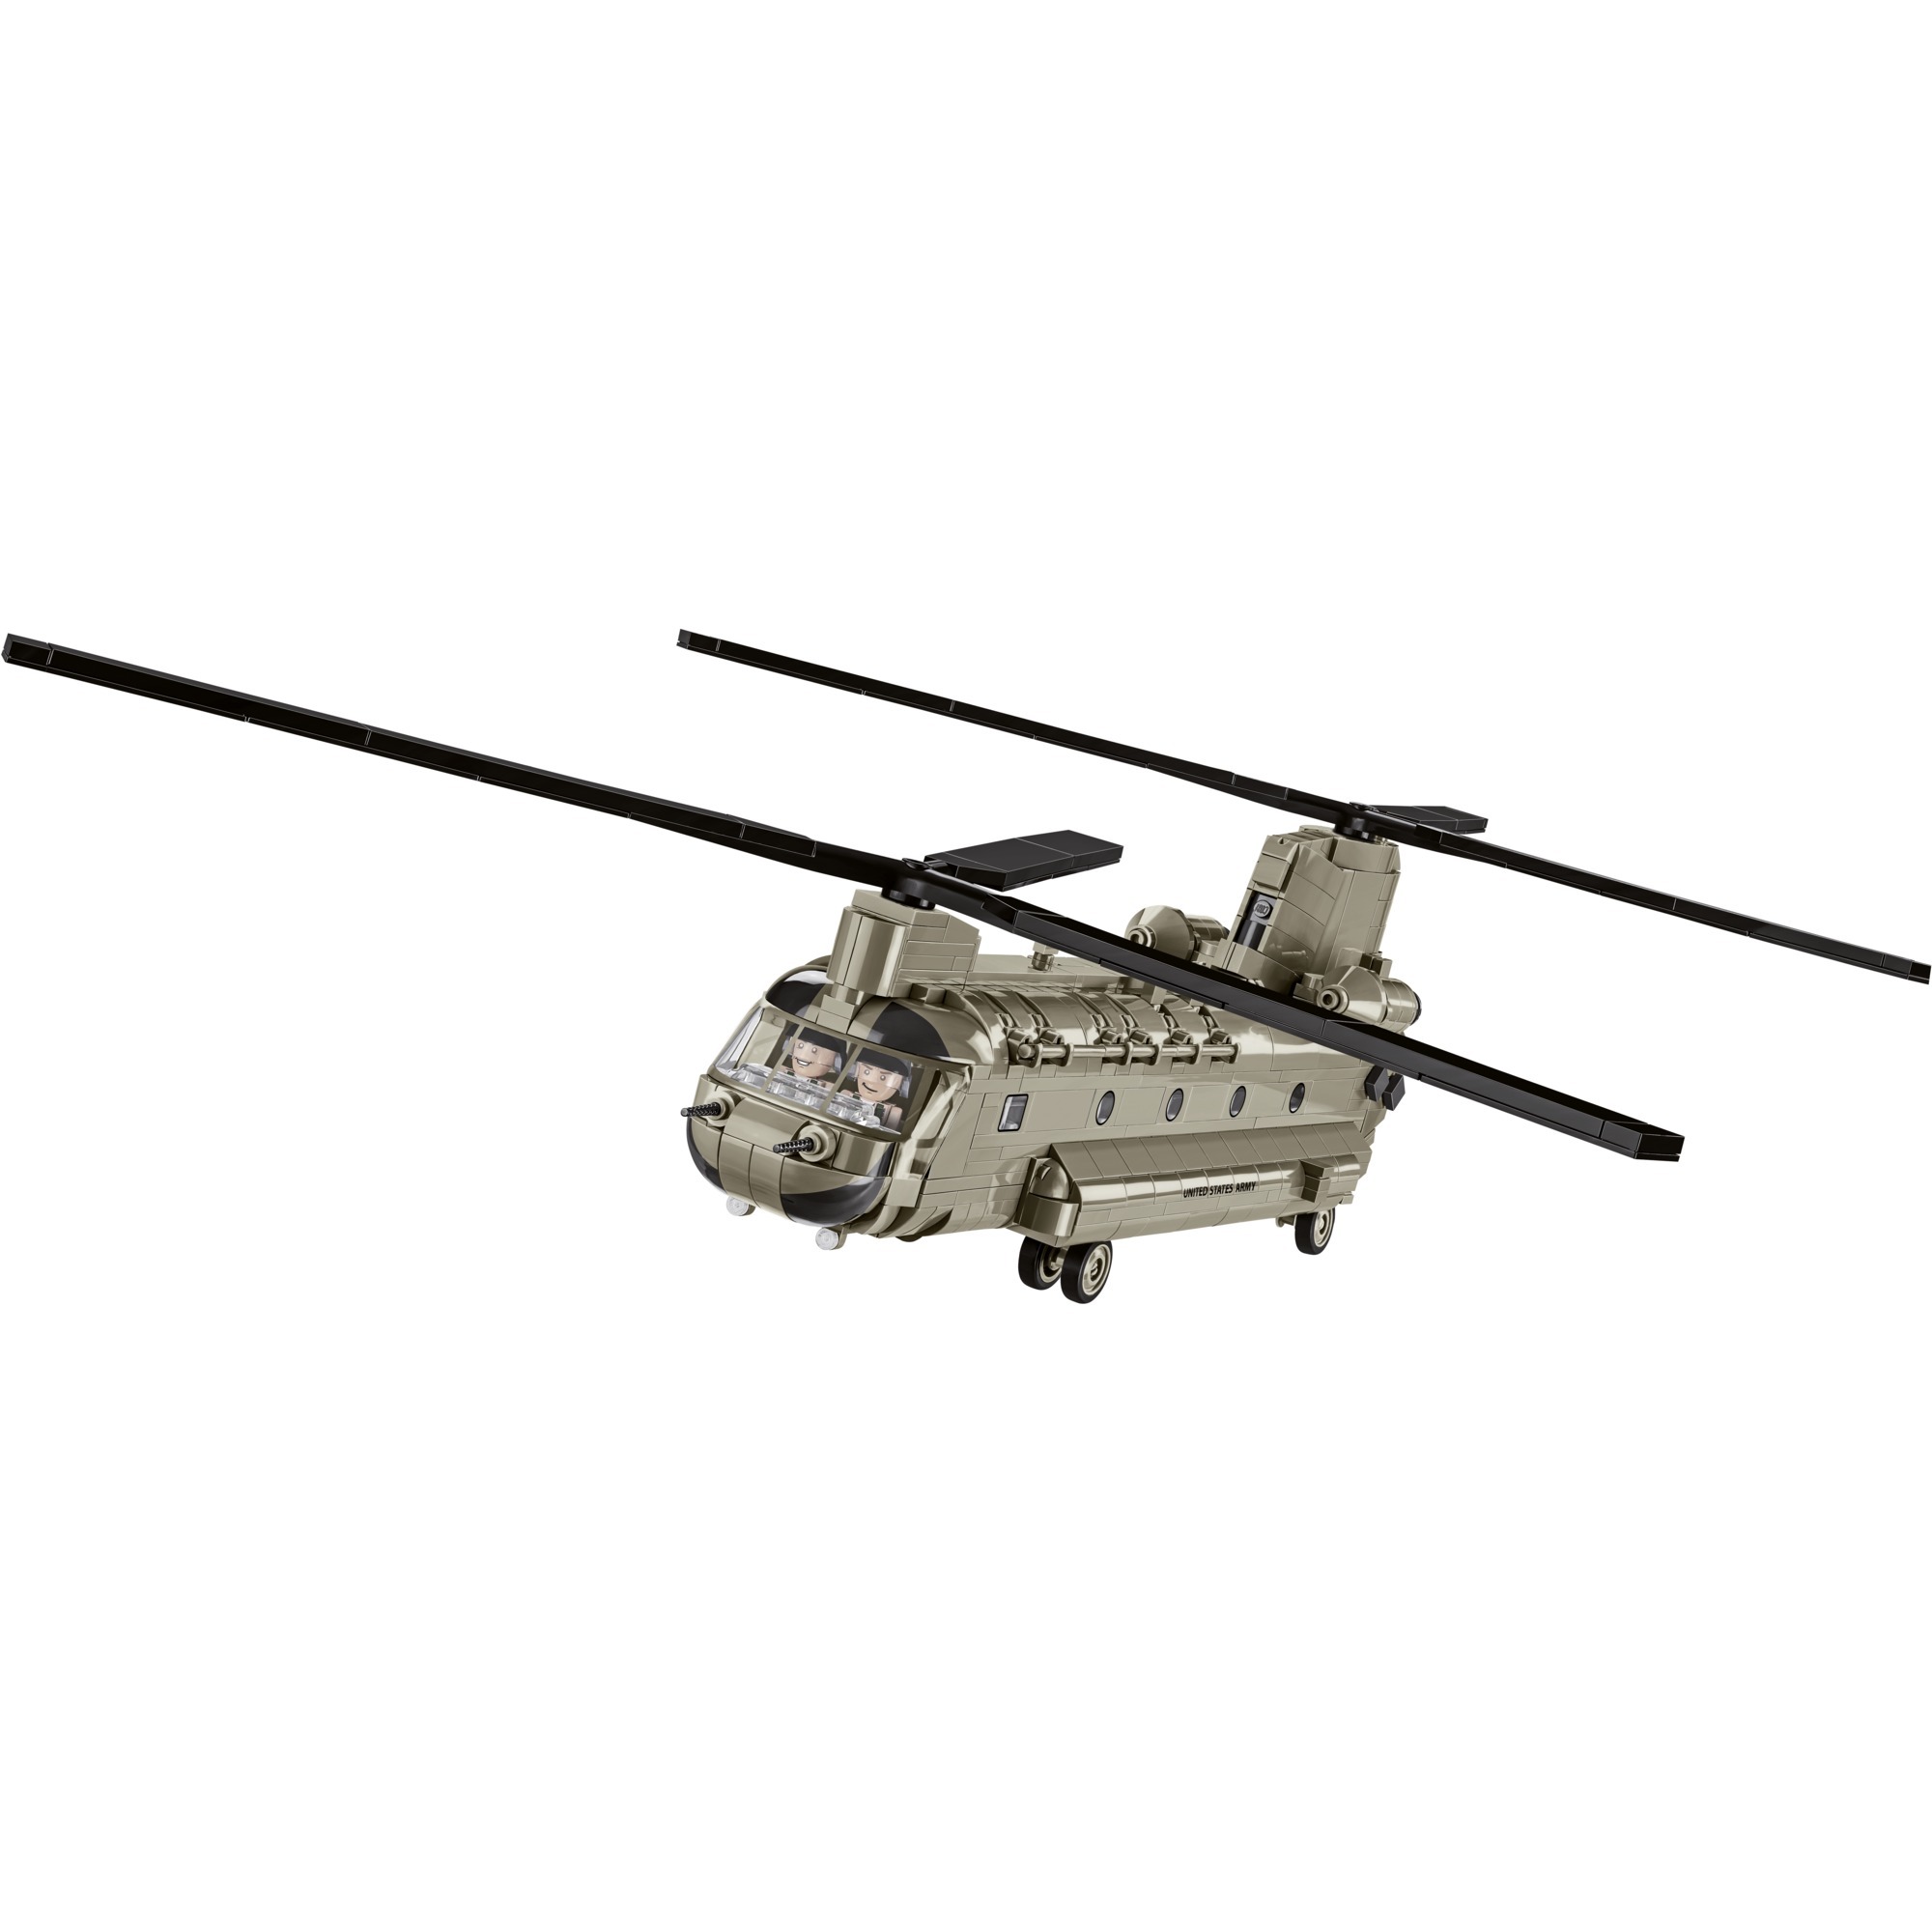 Image of Alternate - Armed Forces Ch-47 Chinook, Konstruktionsspielzeug online einkaufen bei Alternate